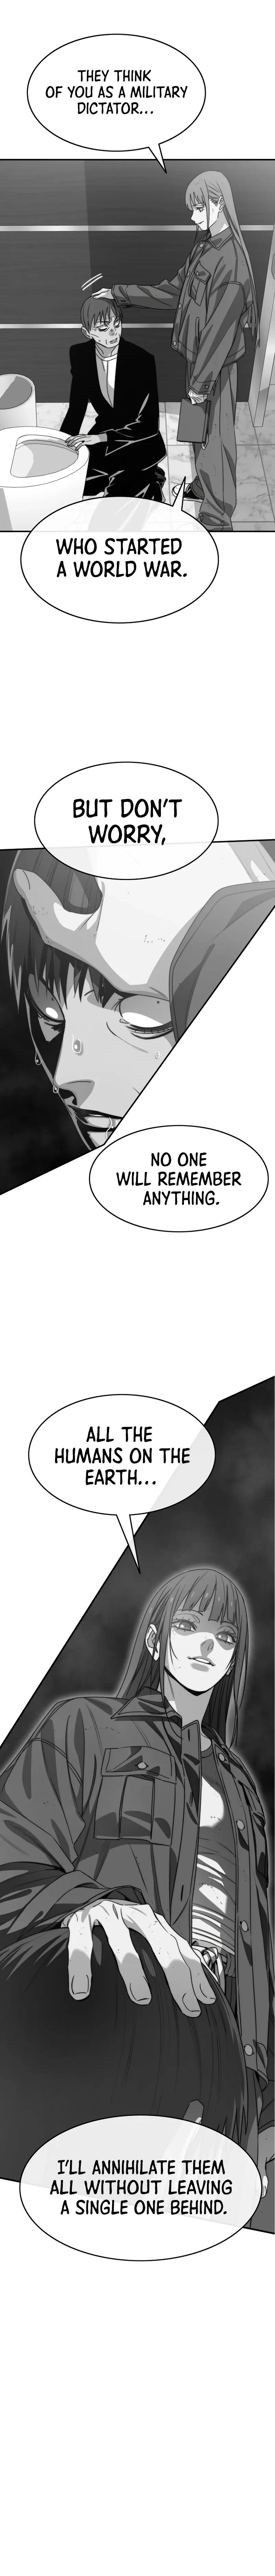 Existence Chapter 63 page 10 - Mangakakalot